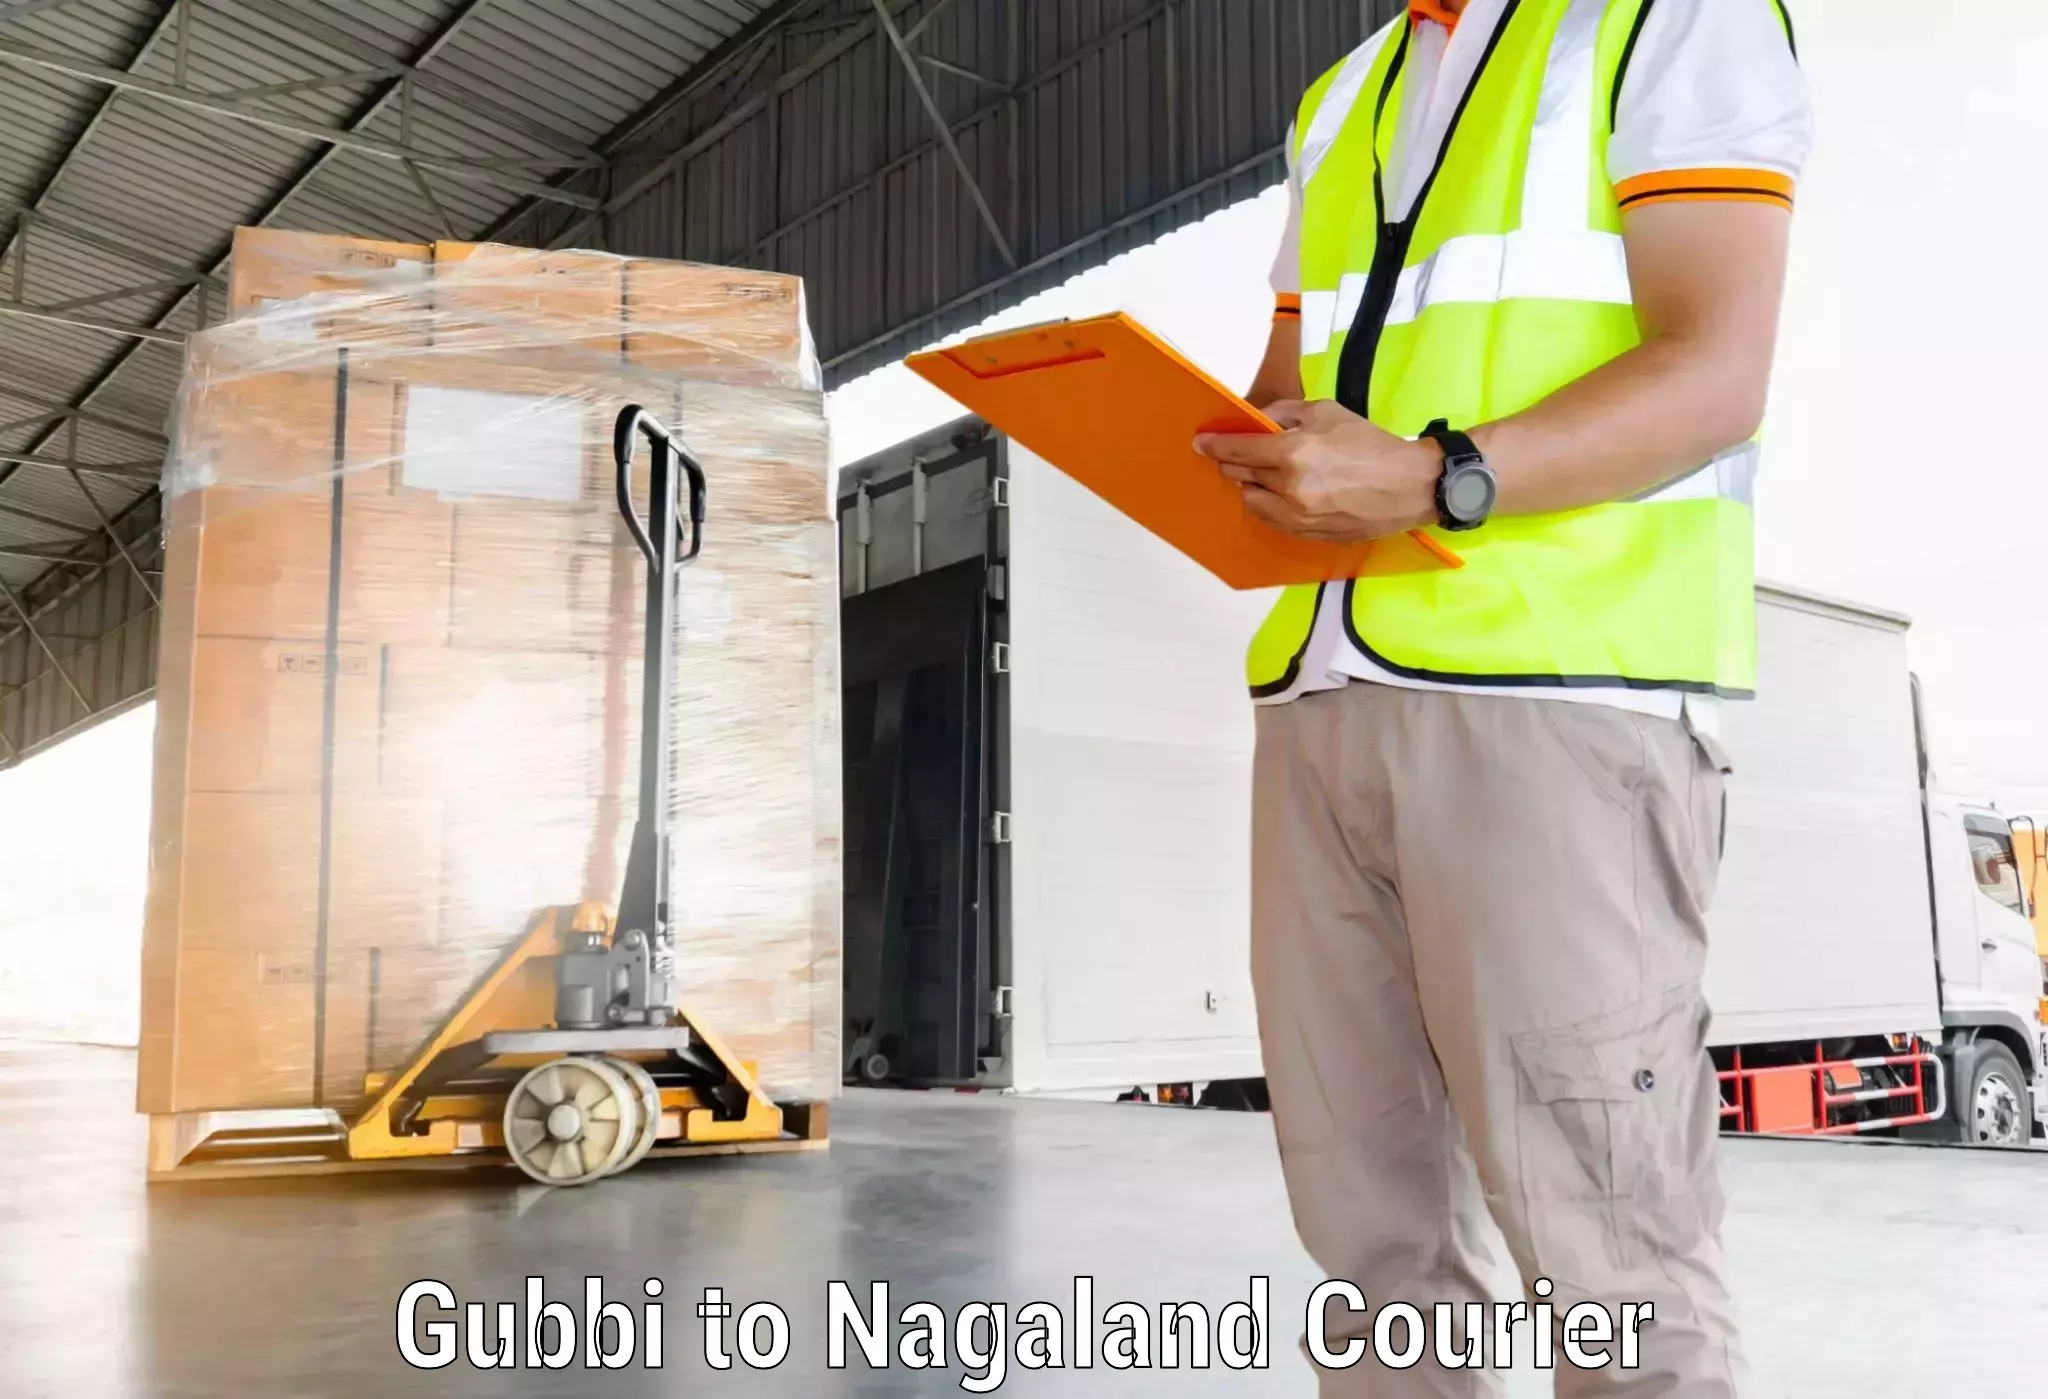 24-hour courier service Gubbi to Nagaland